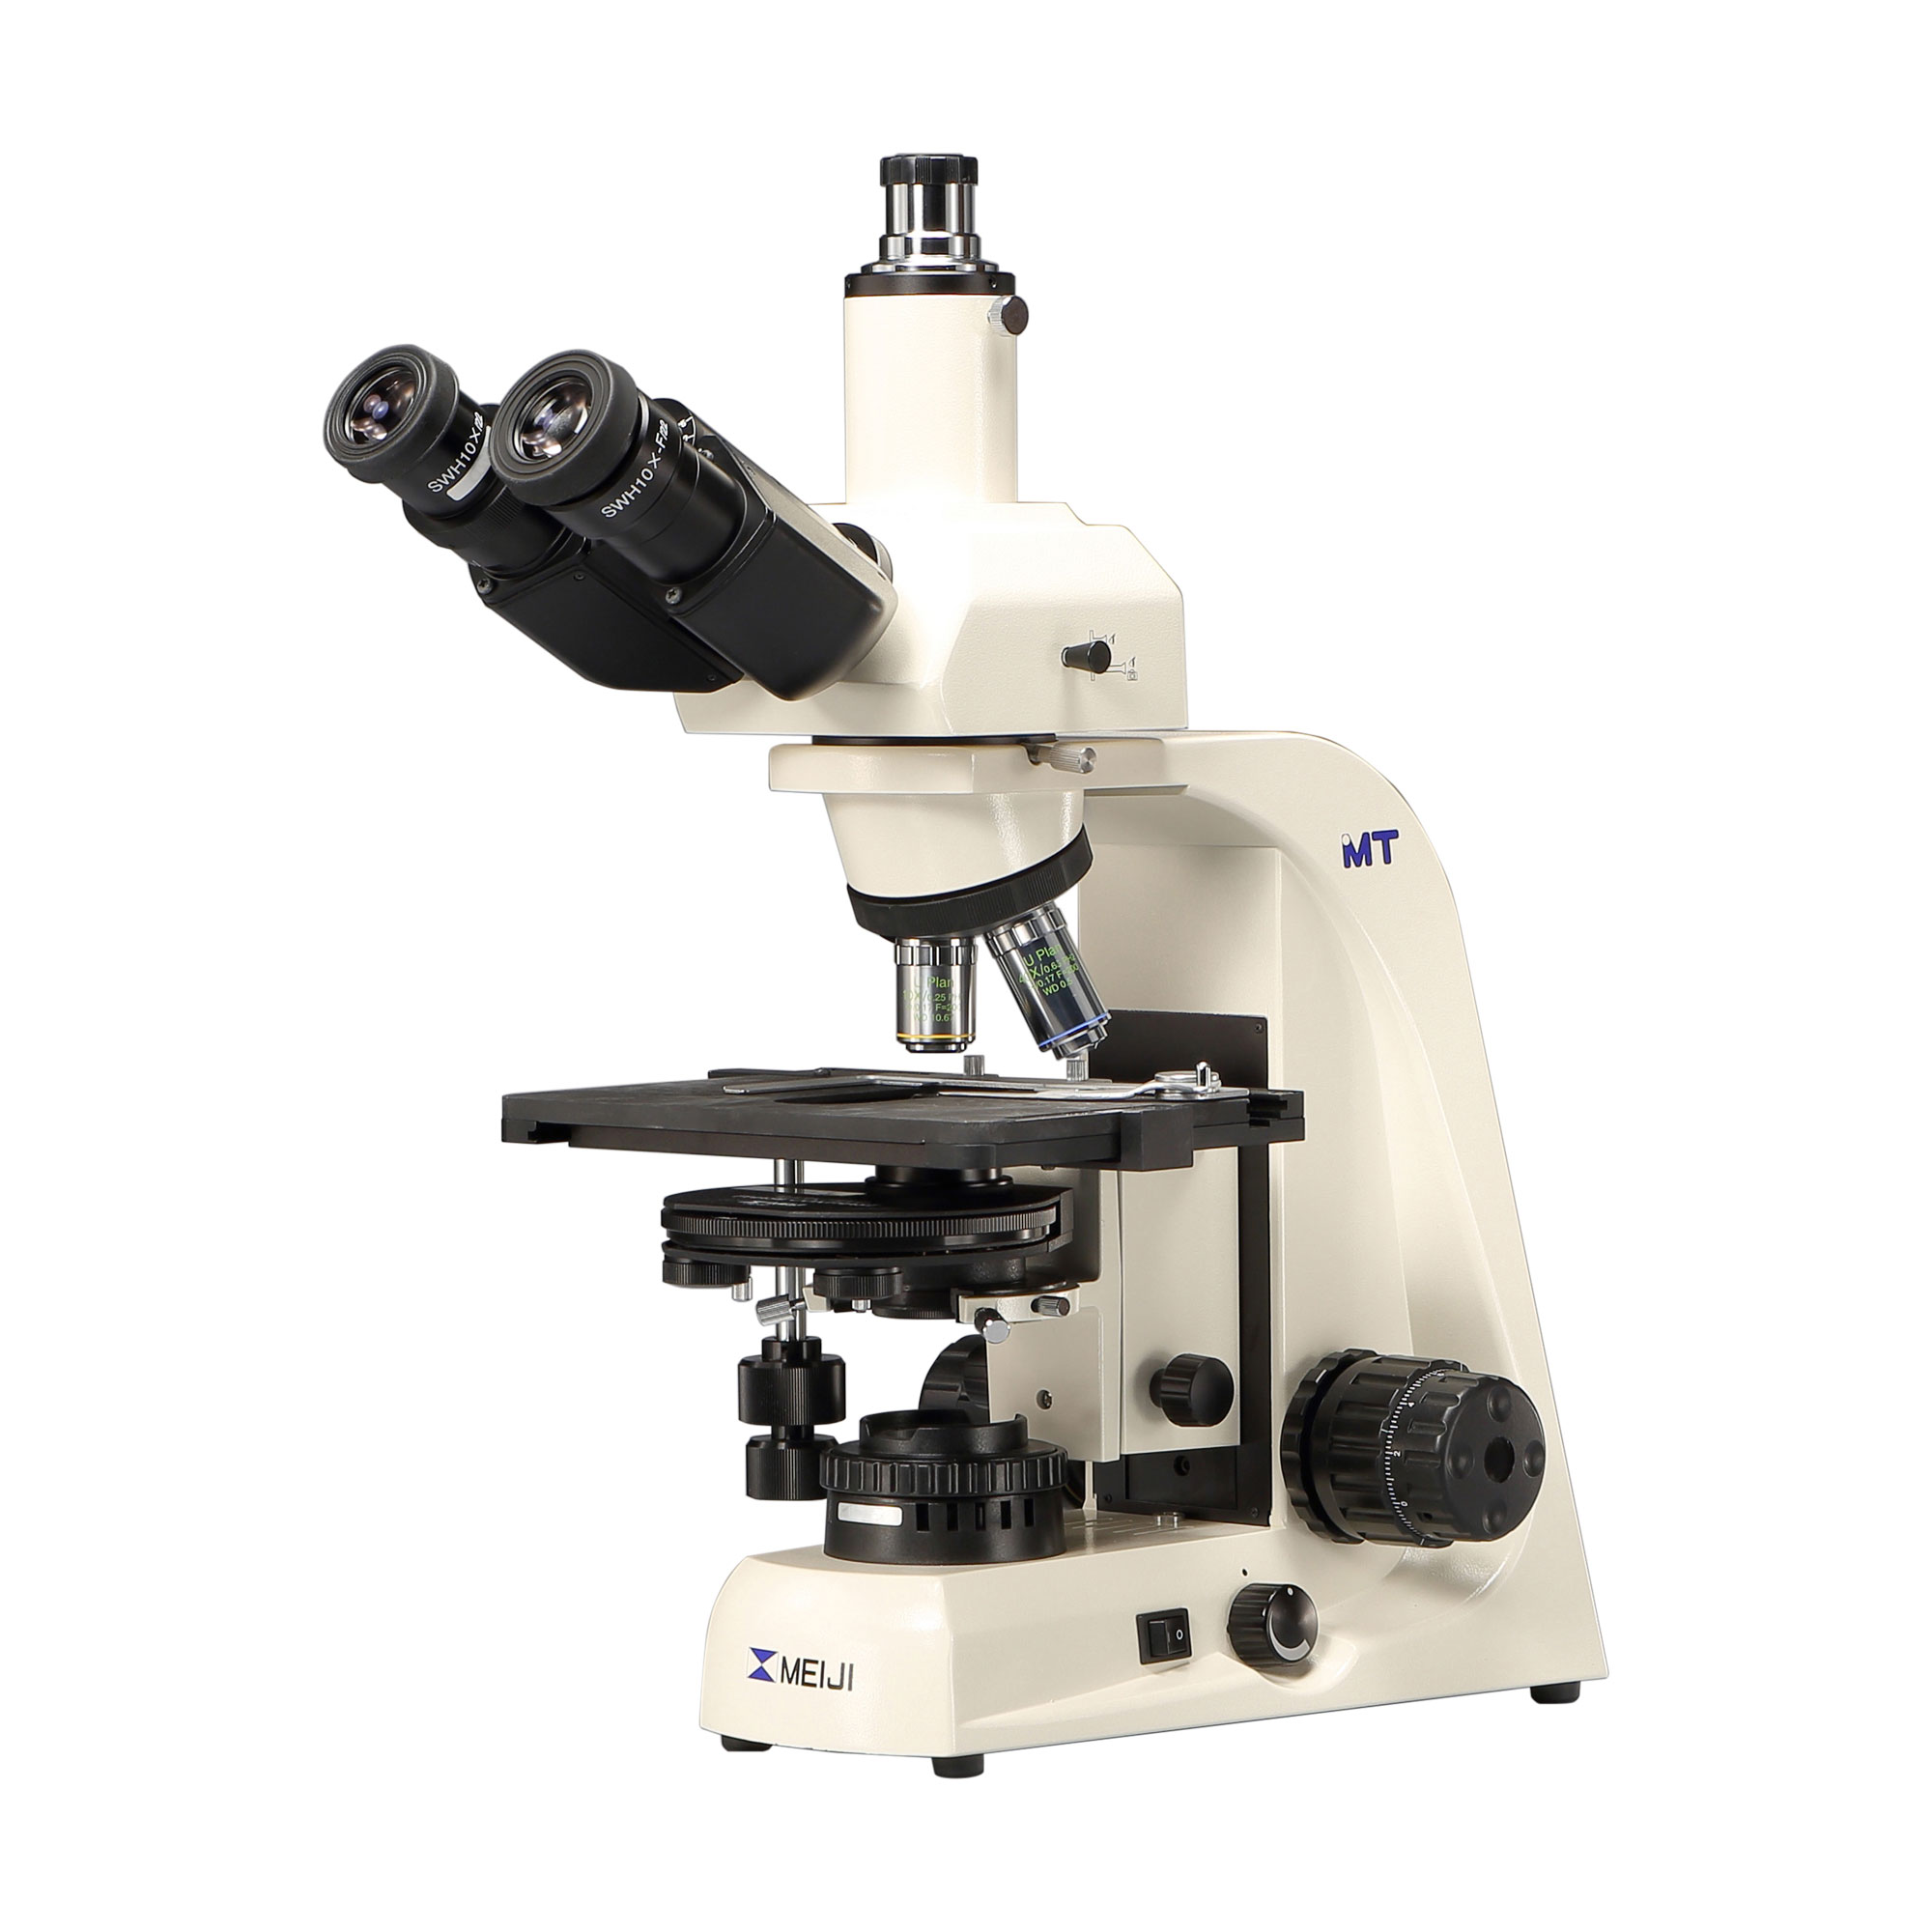 アスベスト測定用位相差顕微鏡 MT5310L/PCM型